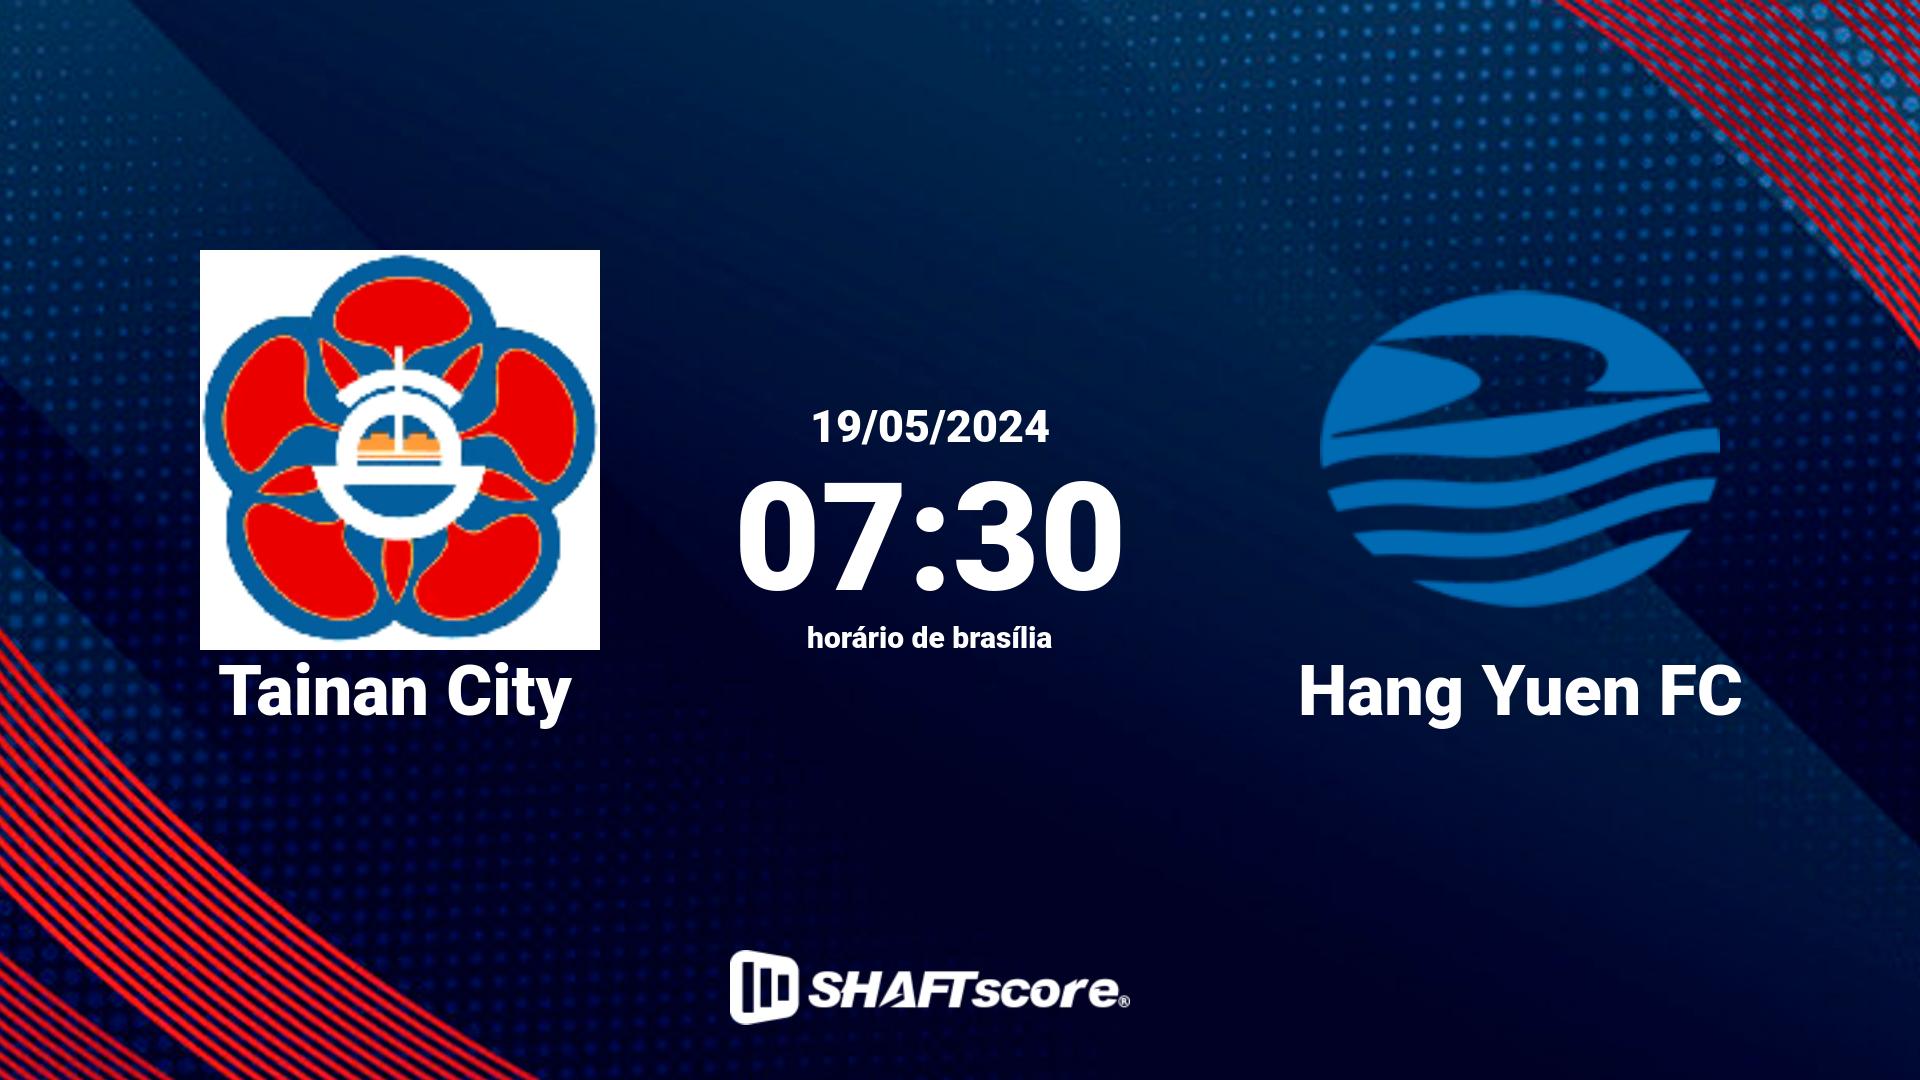 Estatísticas do jogo Tainan City vs Hang Yuen FC 19.05 07:30